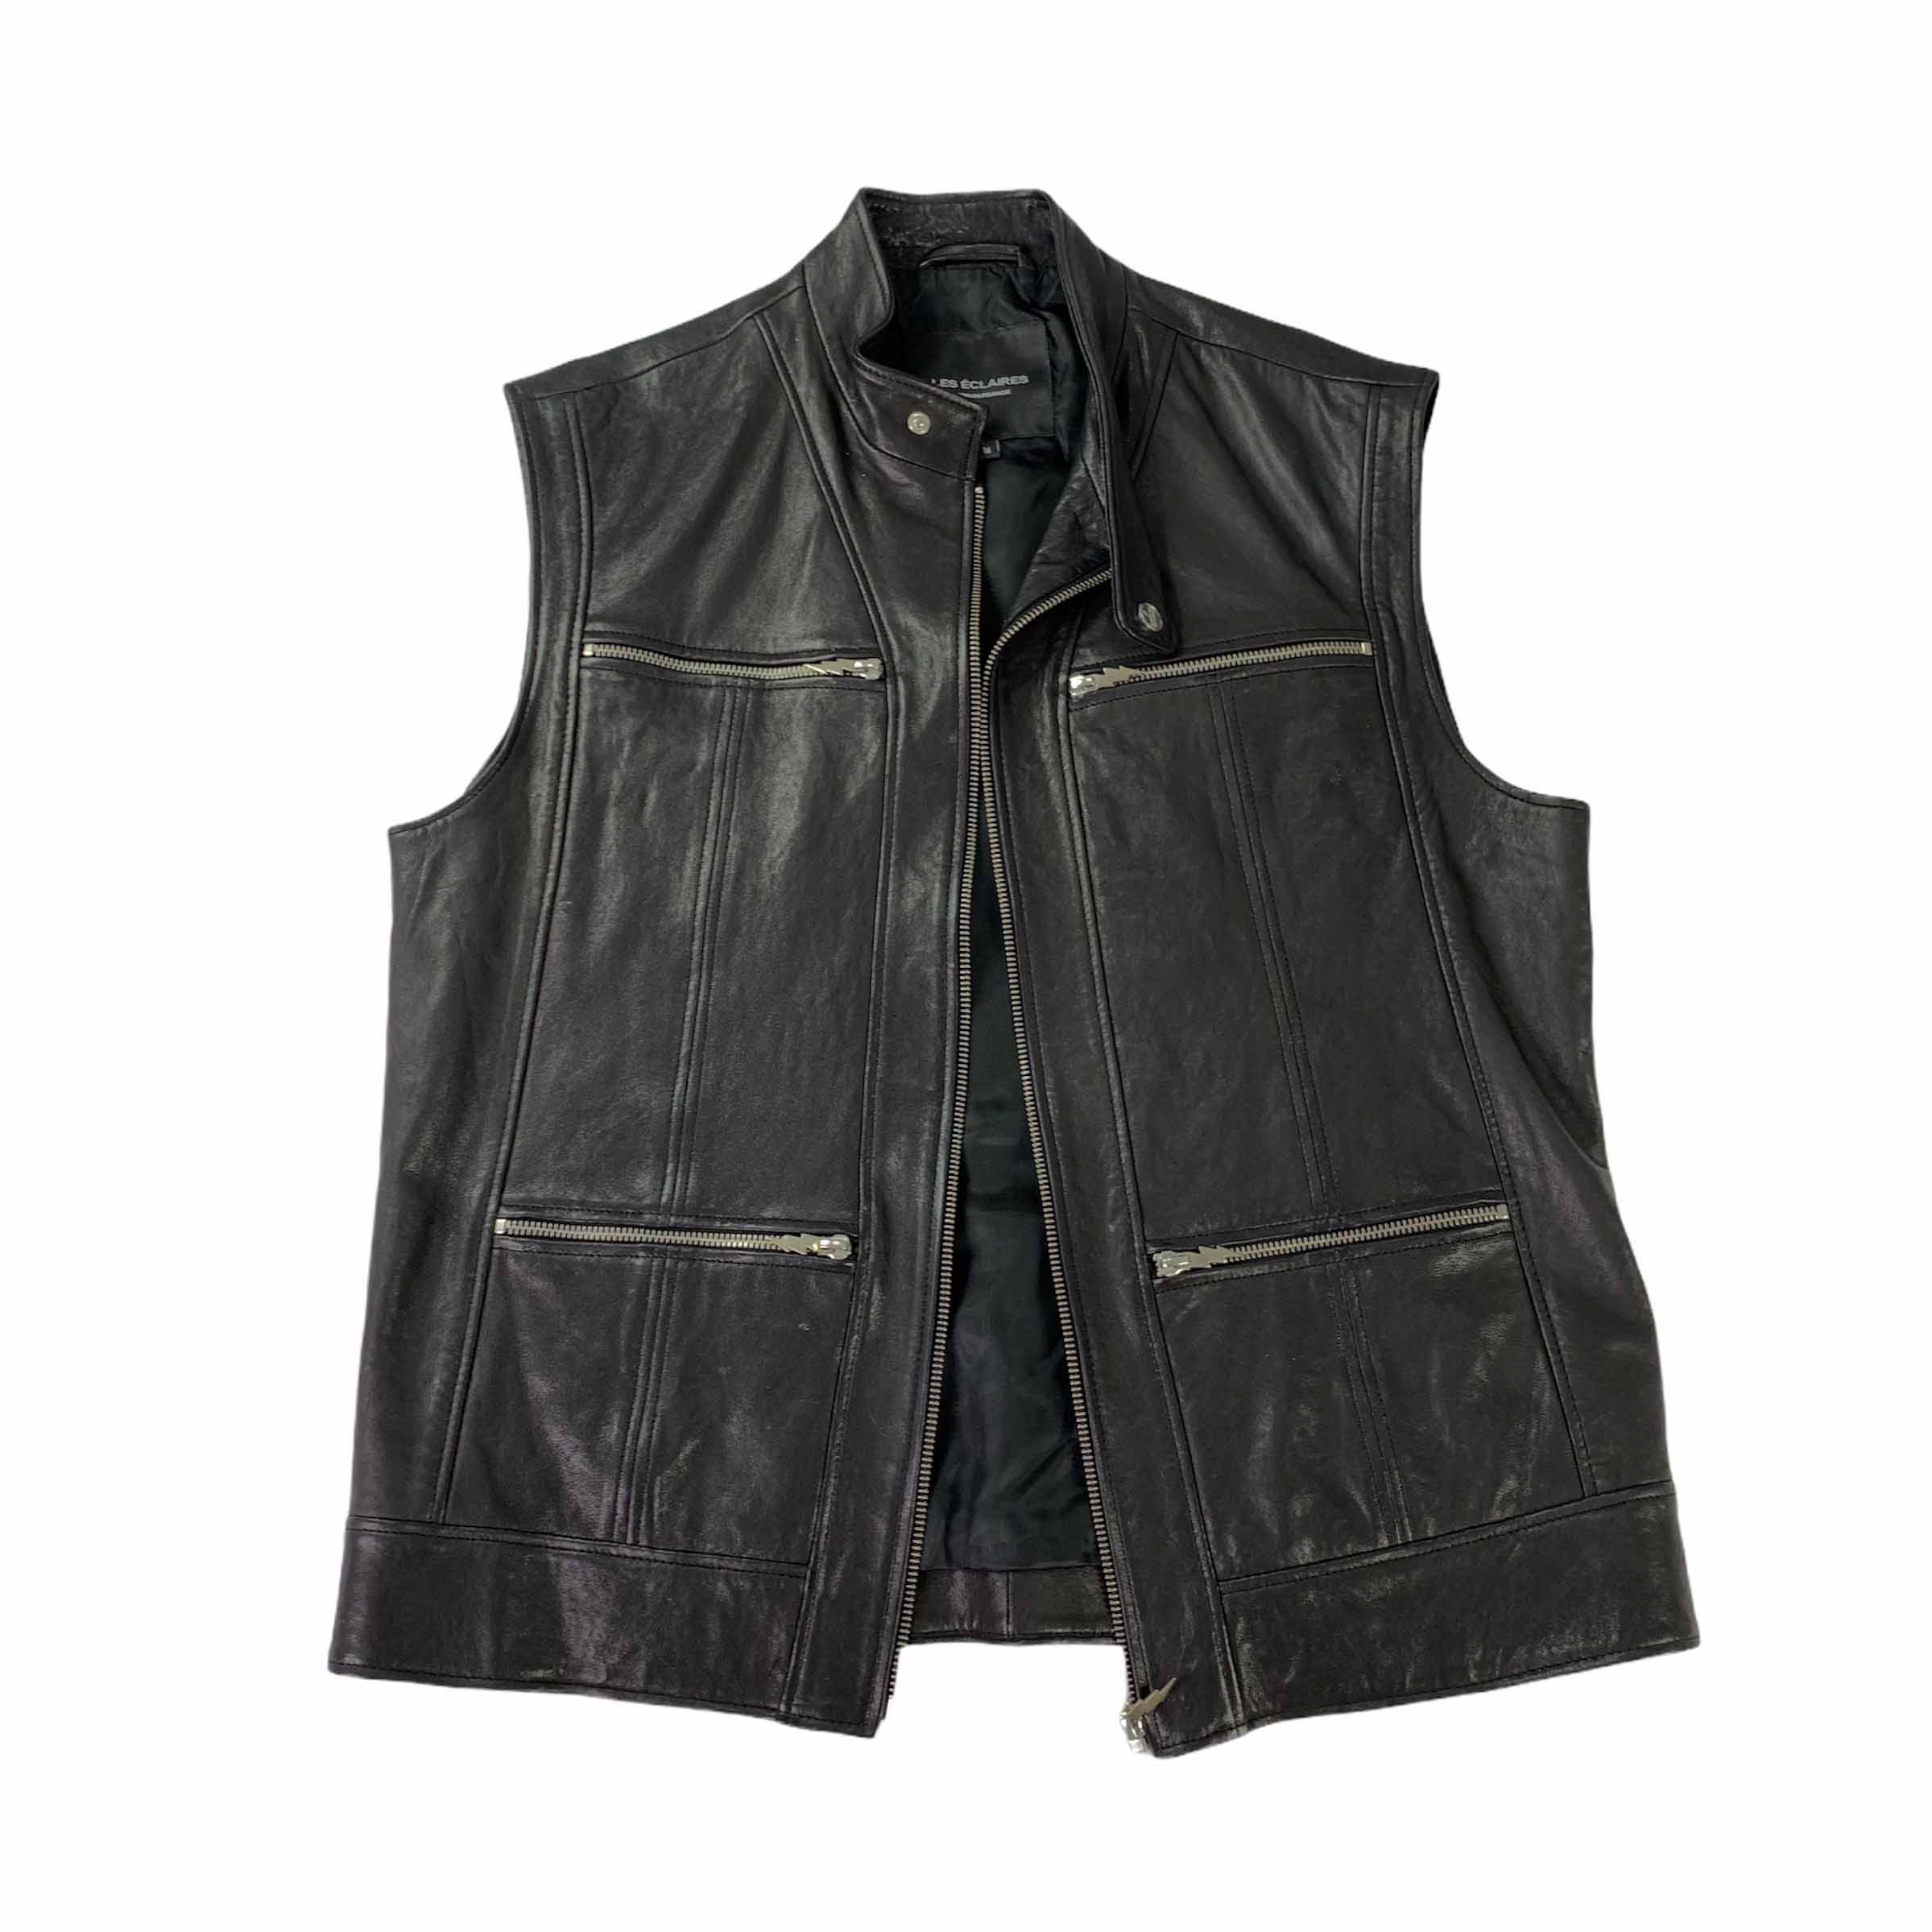 [Les Eclaires] Printed Panel Leather Vest BK - Size M